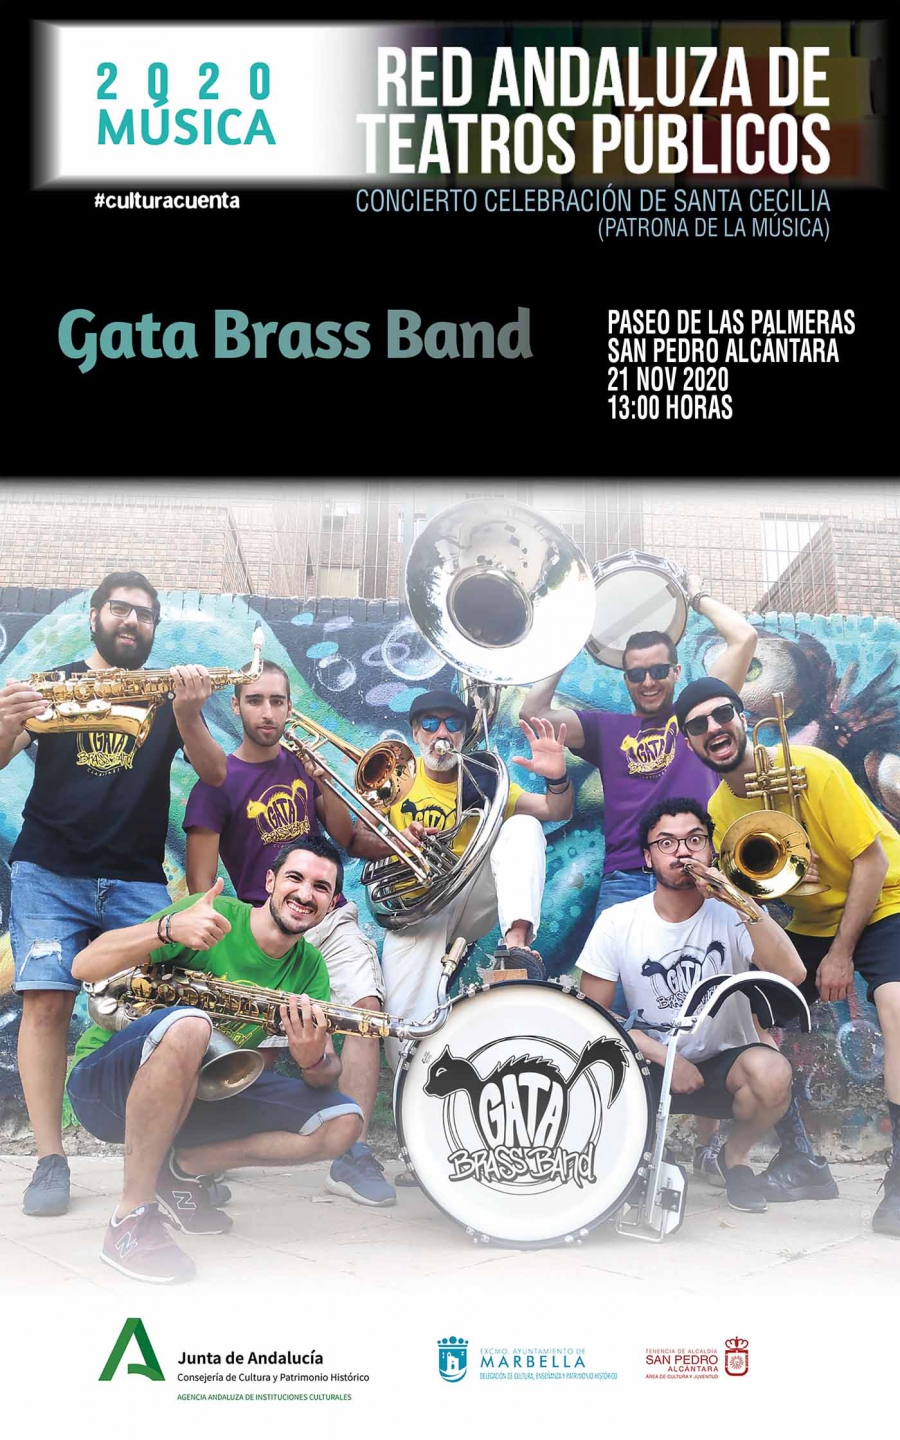 El Paseo de Las Palmeras de San Pedro Alcántara será escenario este sábado del concierto en honor a Santa Cecilia a cargo de la banda Gata Brass Band